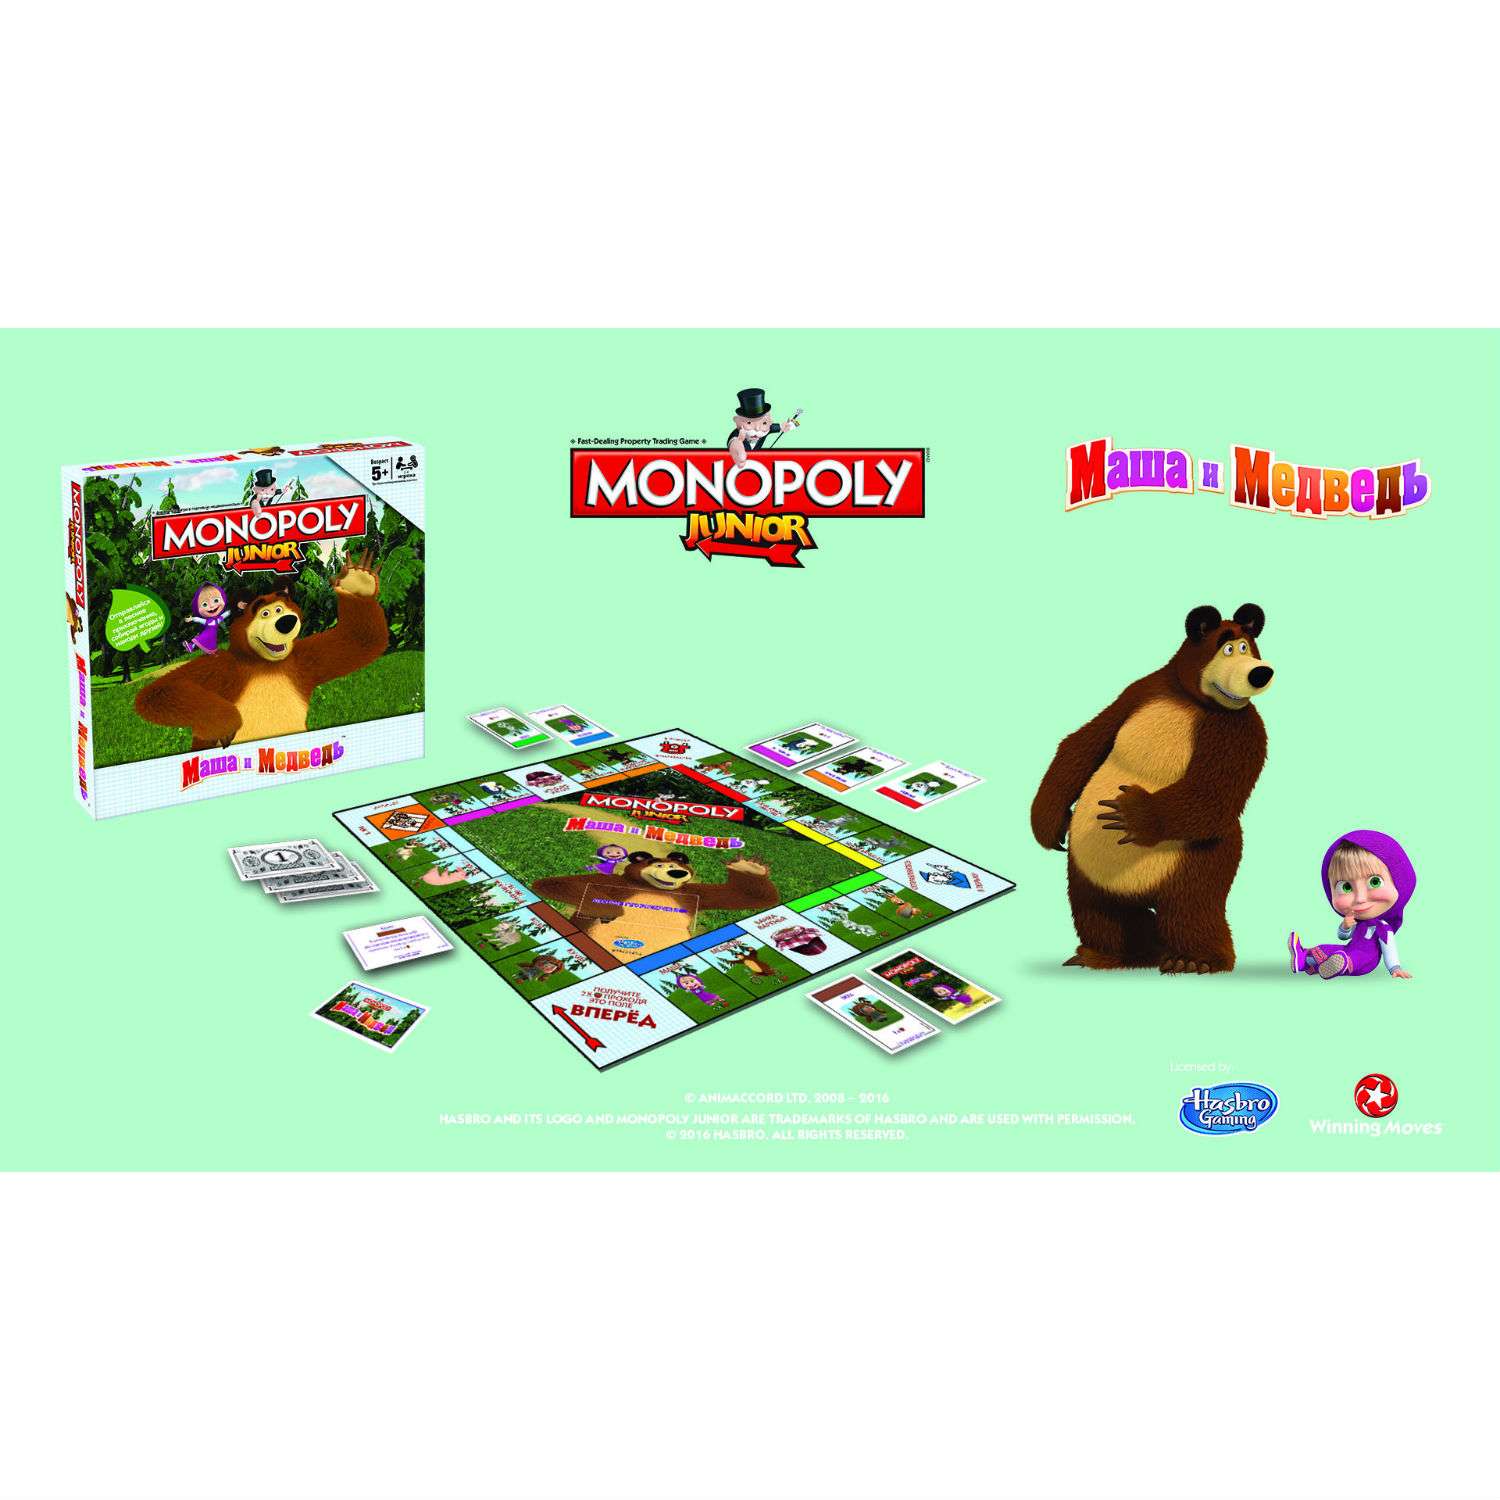 Настольная игра Monopoly монополия Маша и медведь - фото 4